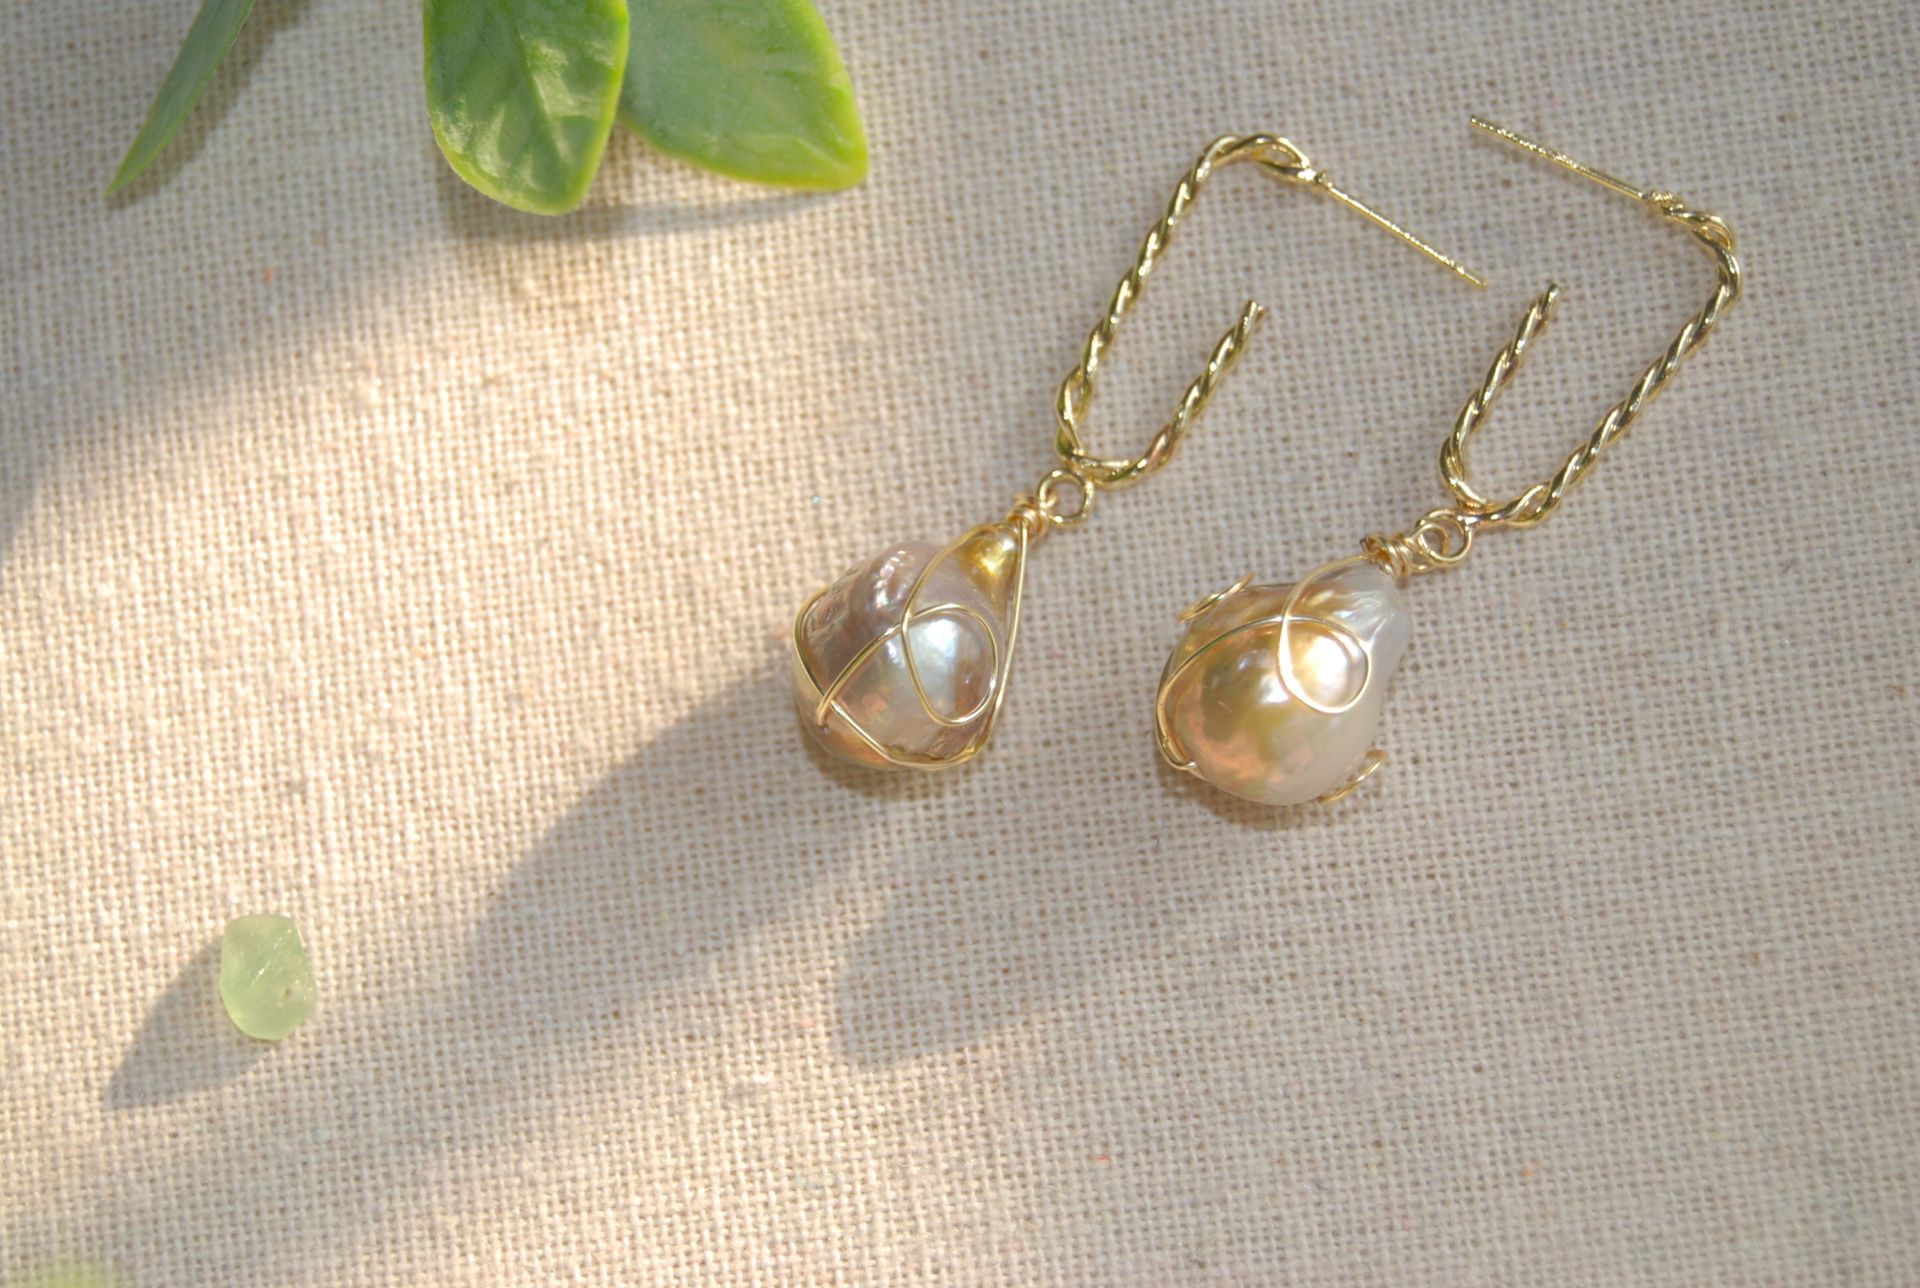 Handmade freshwater baroque pearl earrings